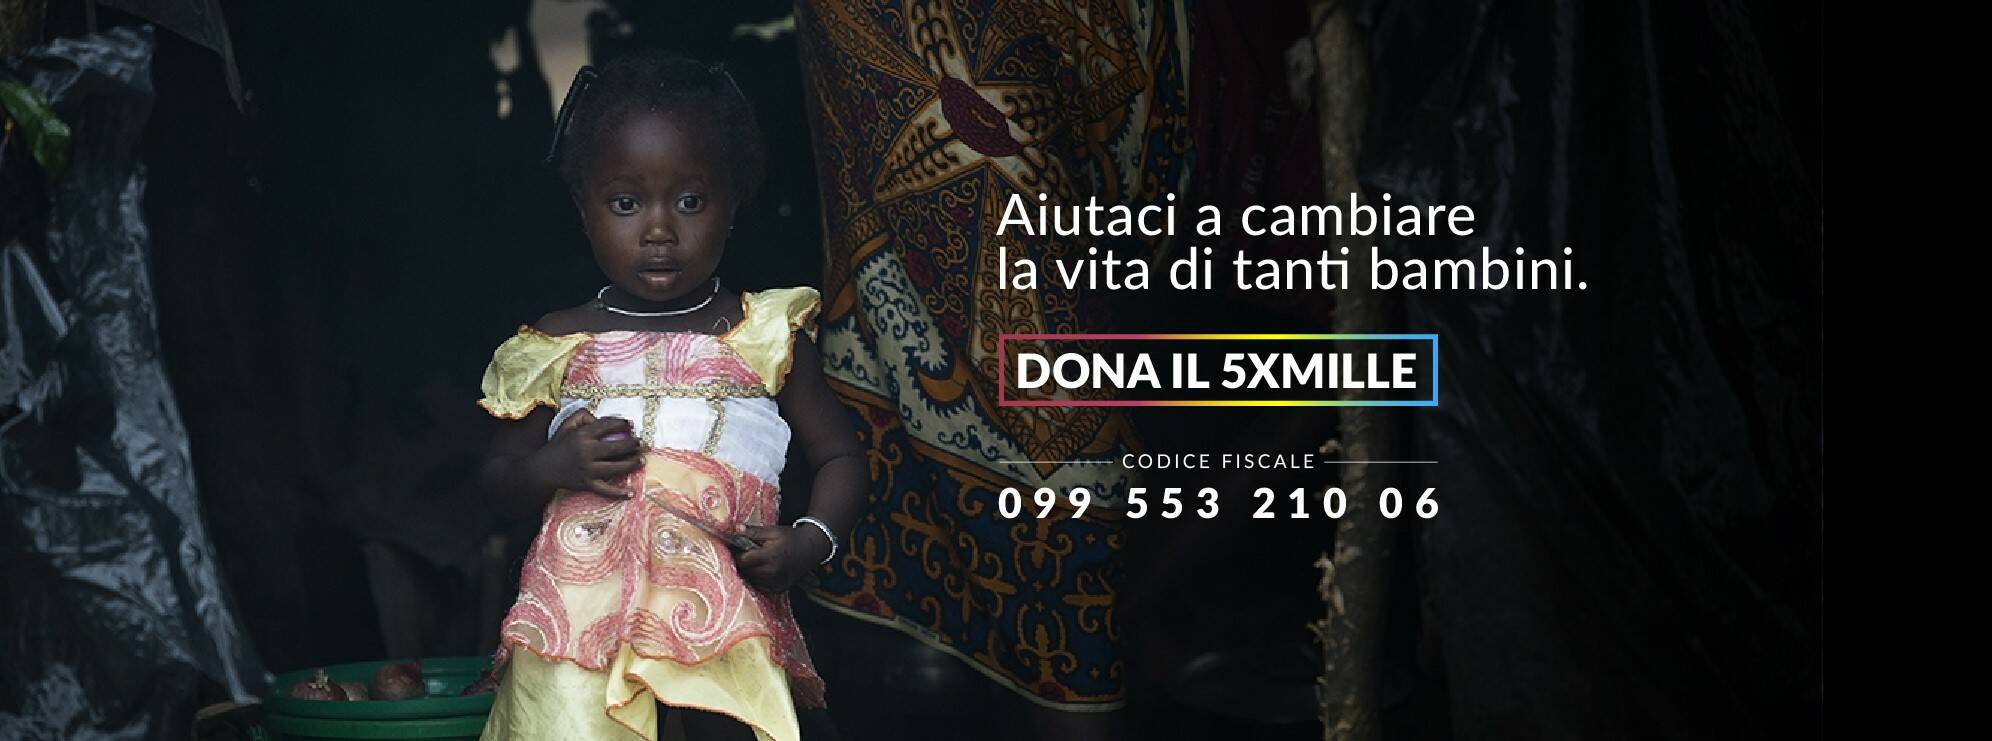 Sviluppo dell’essere umano e sostegno ai bisognosi: dona il 5xmille alla Onlus “Una voce per Padre Pio”